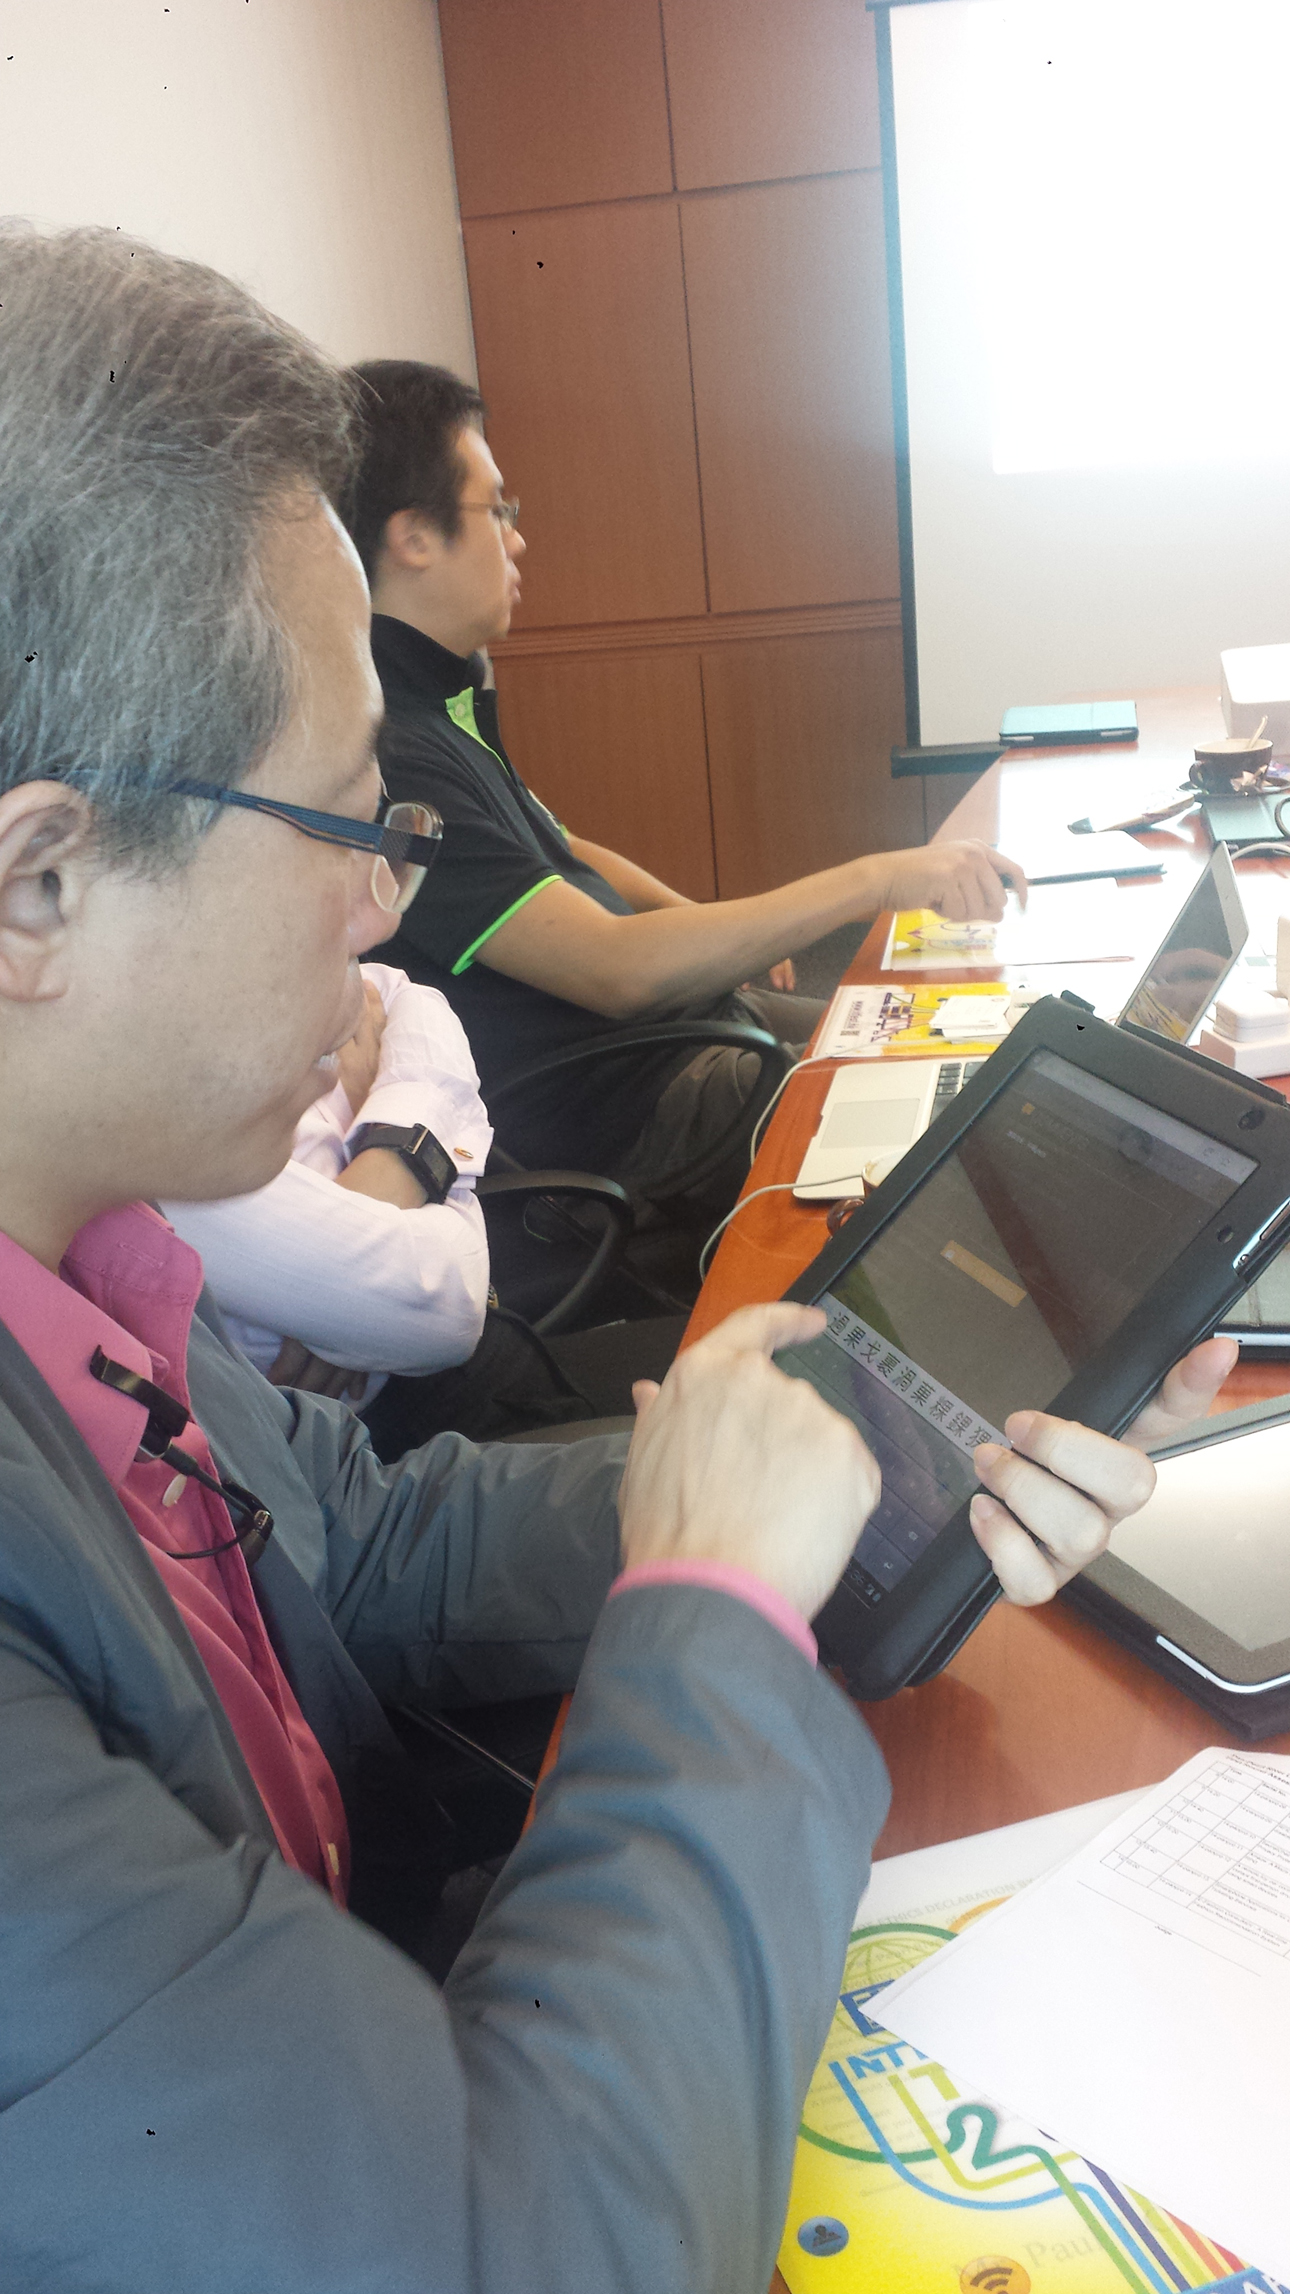 Judges using mobile tablet system